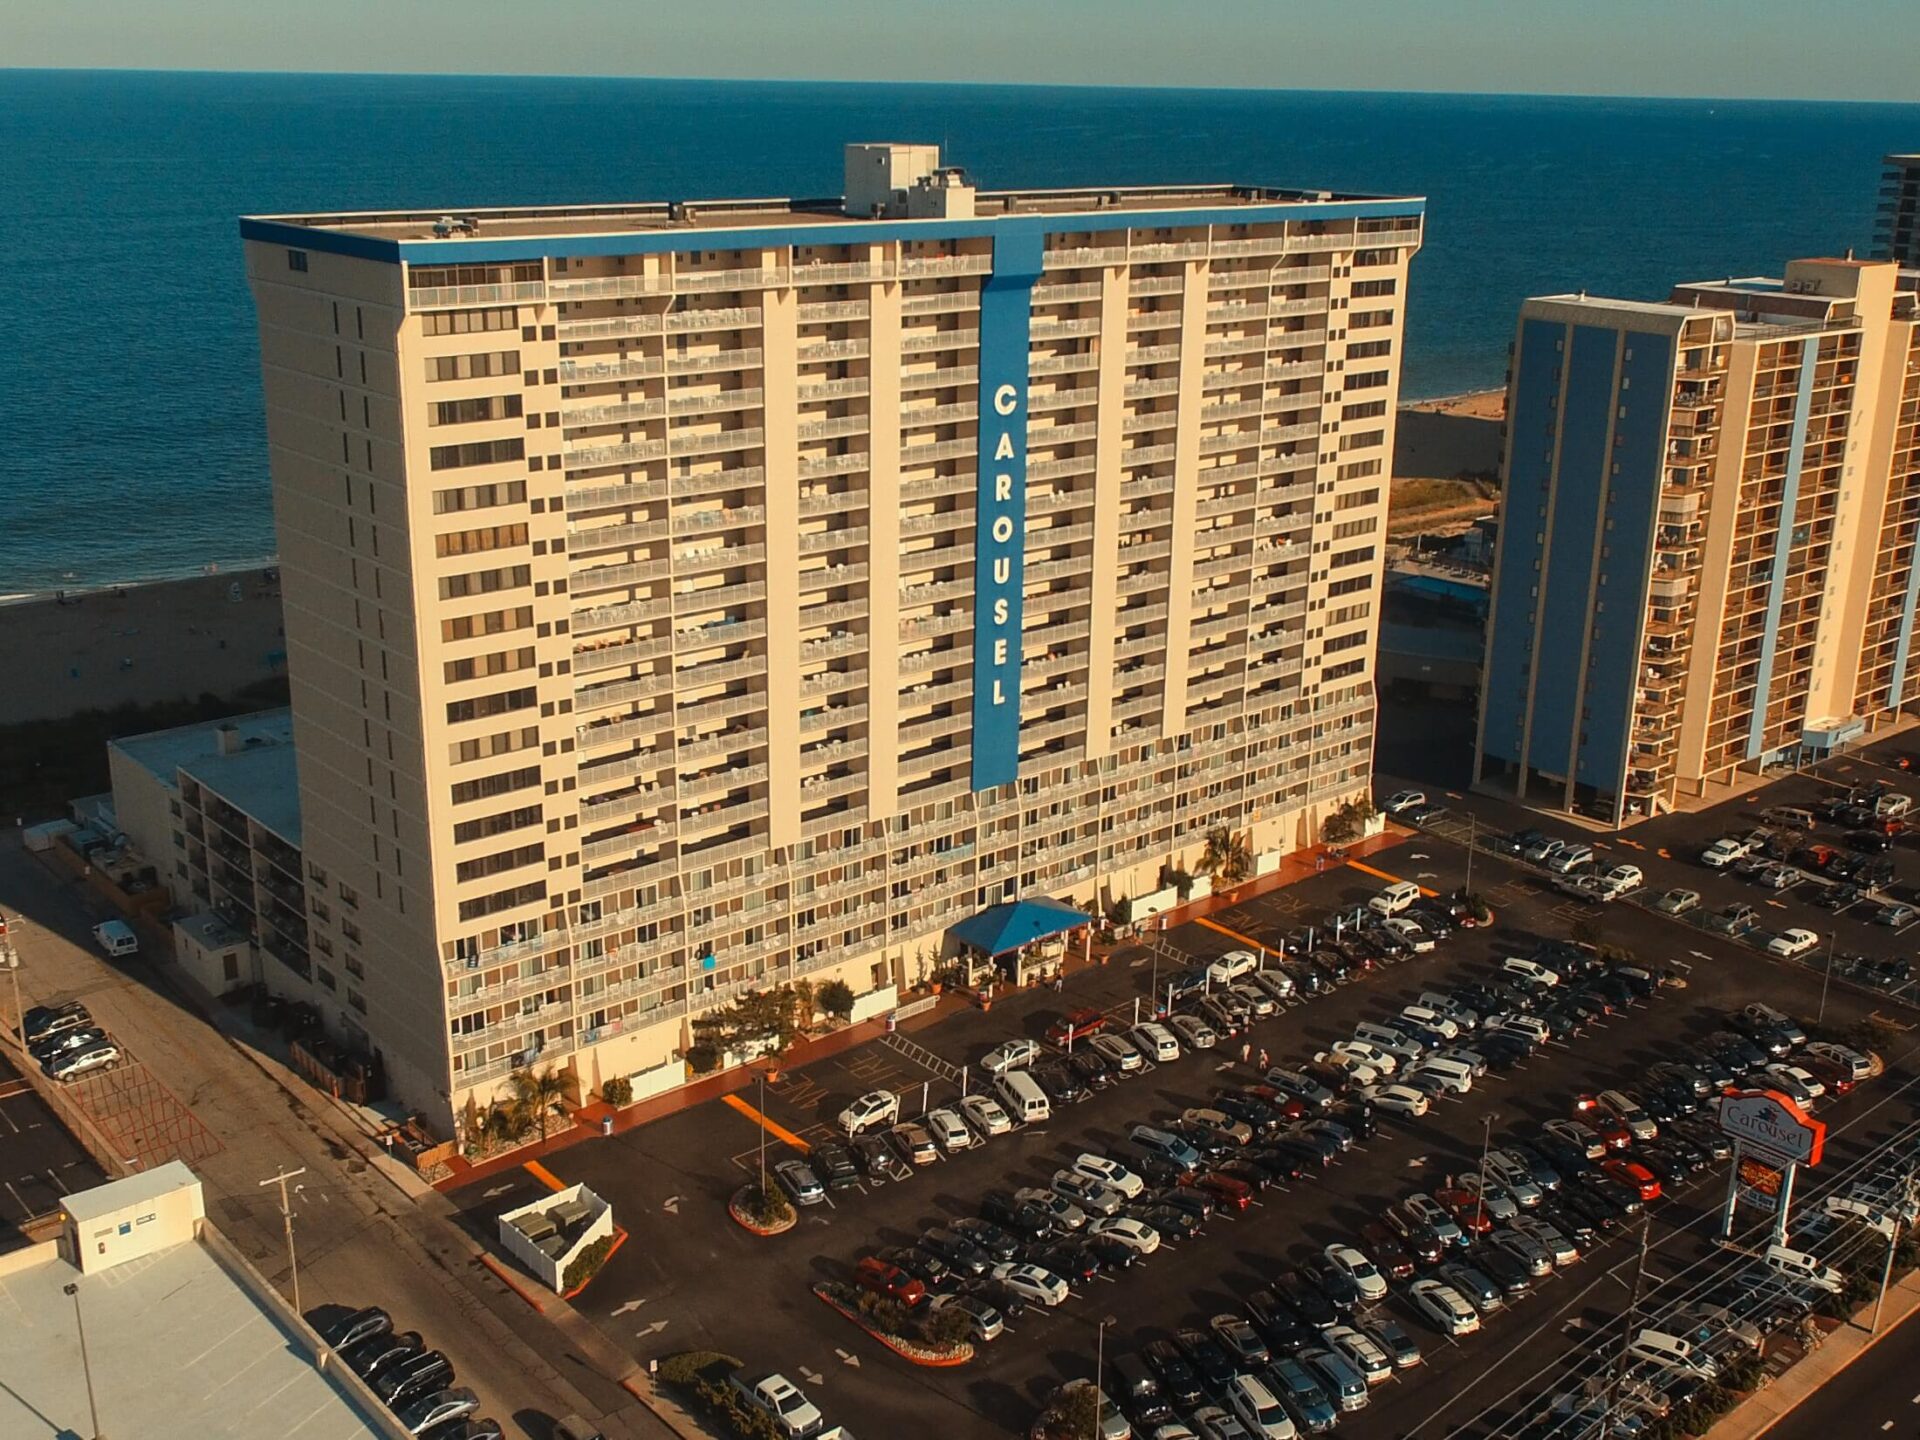 an aerial view of a hotel near the ocean